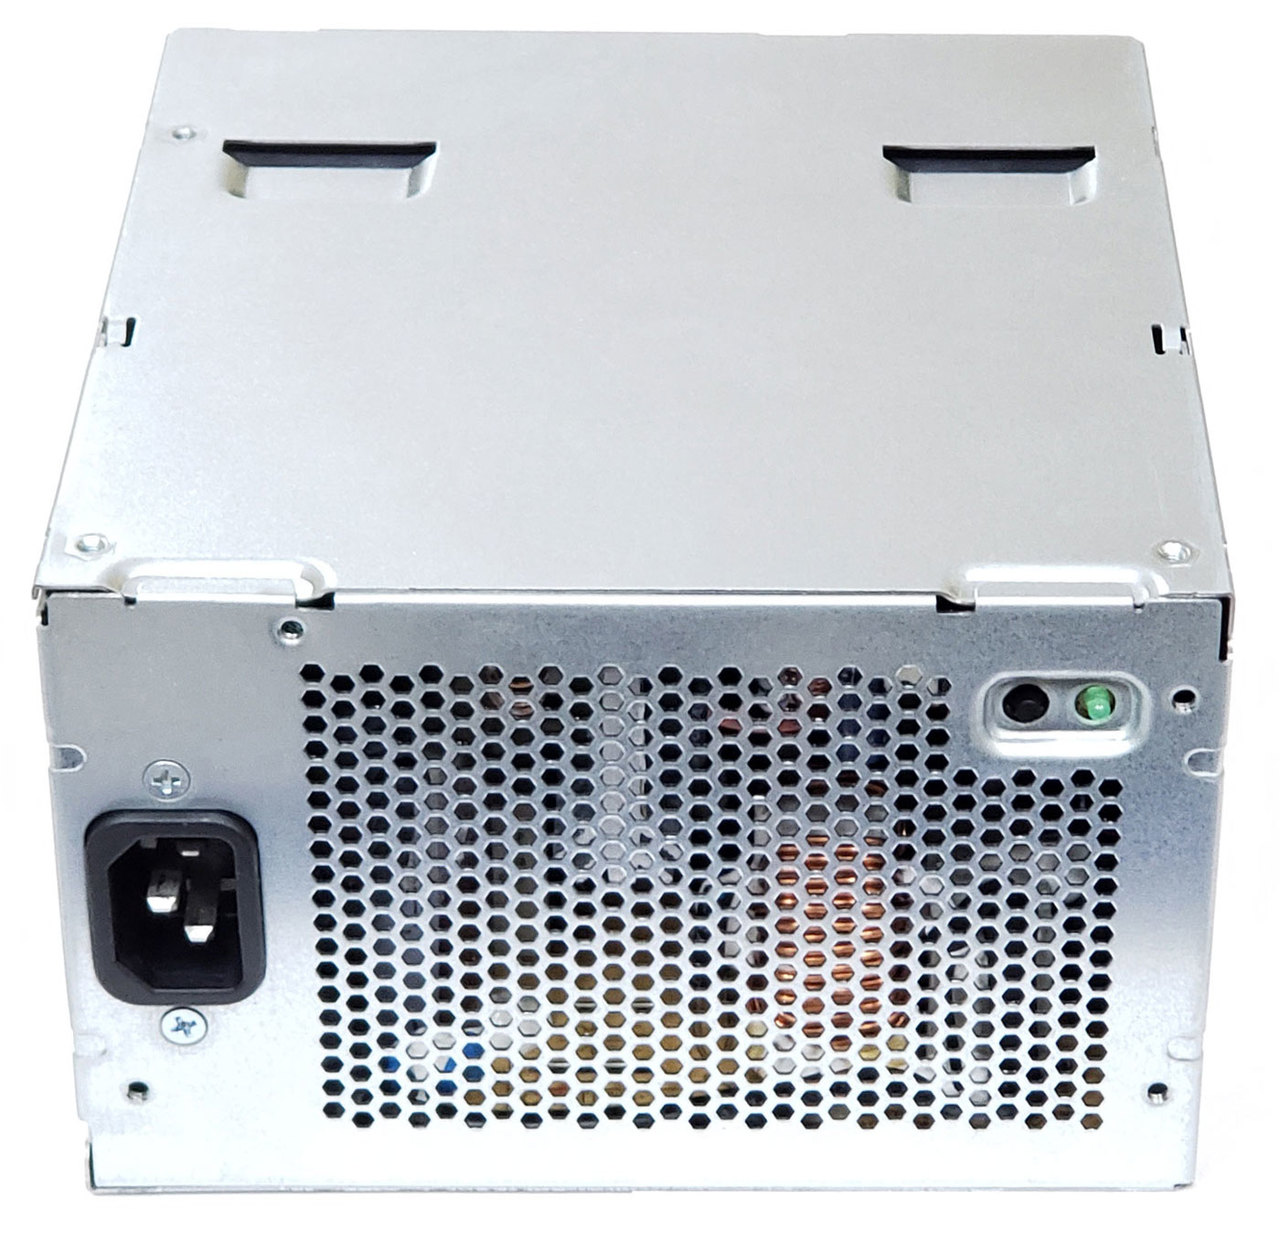 Dell Precision 490 Computer Case 750W Power Supply 